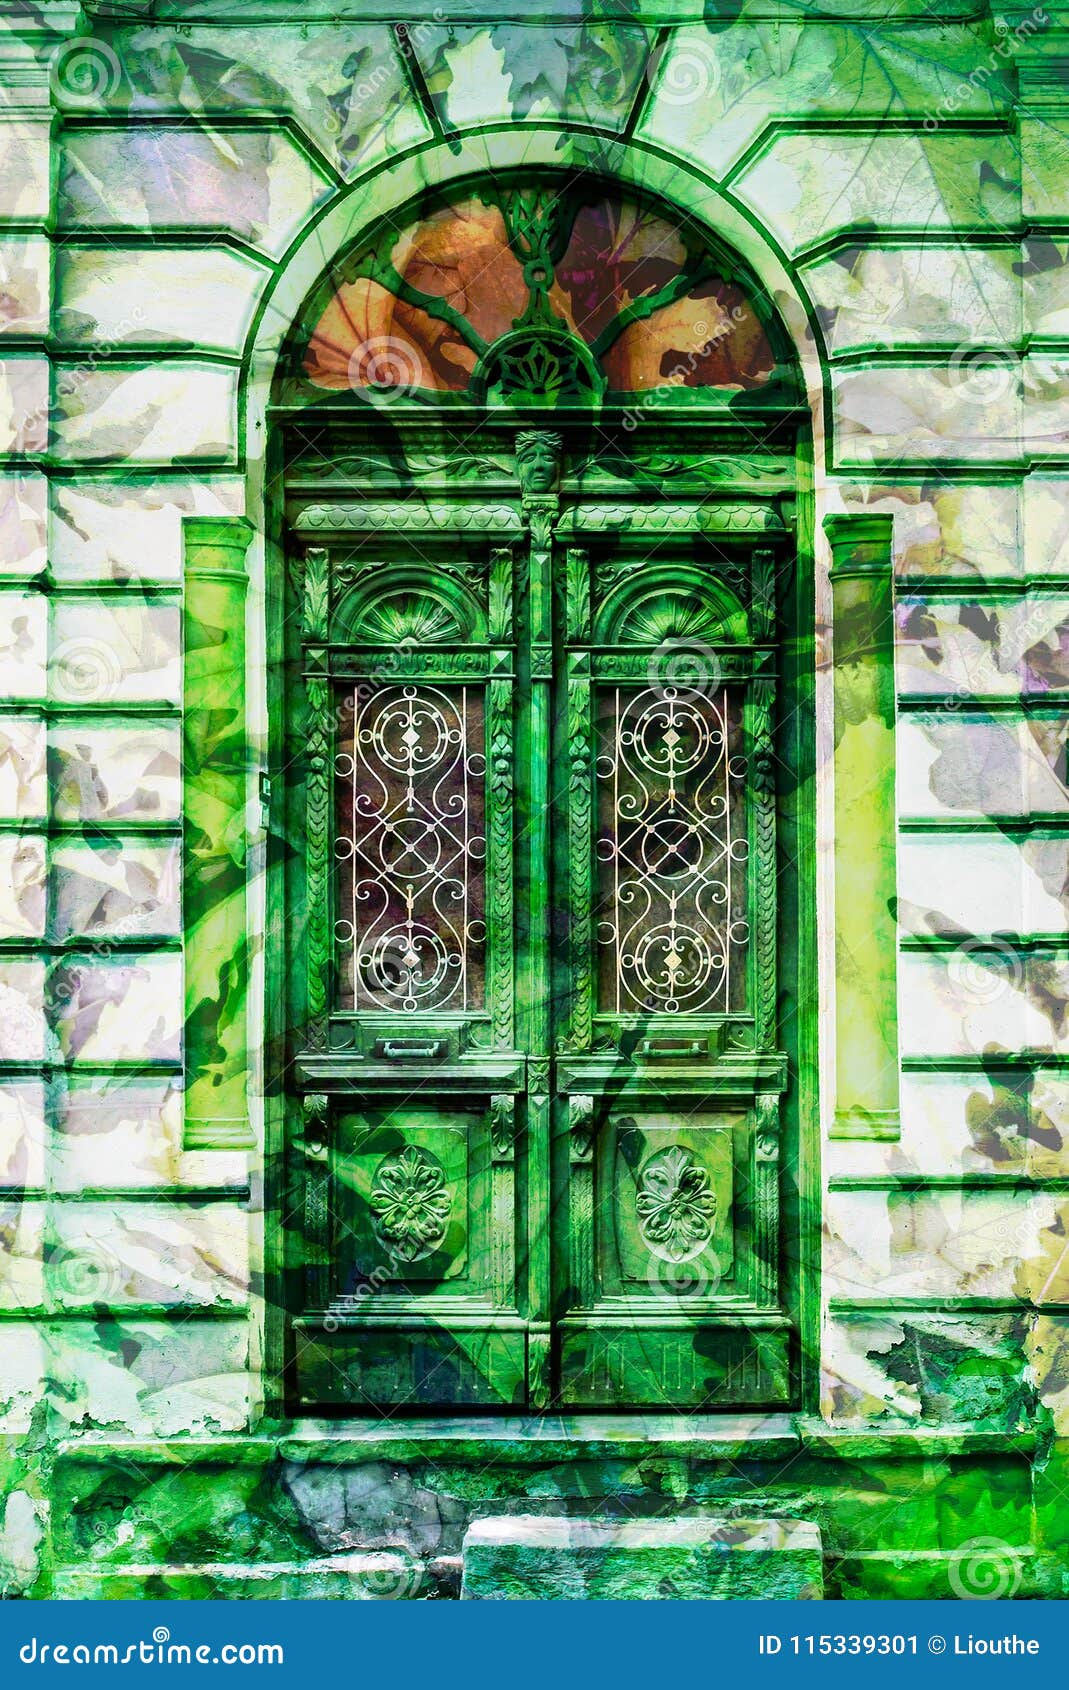 vintage elaborate wooden door with green man